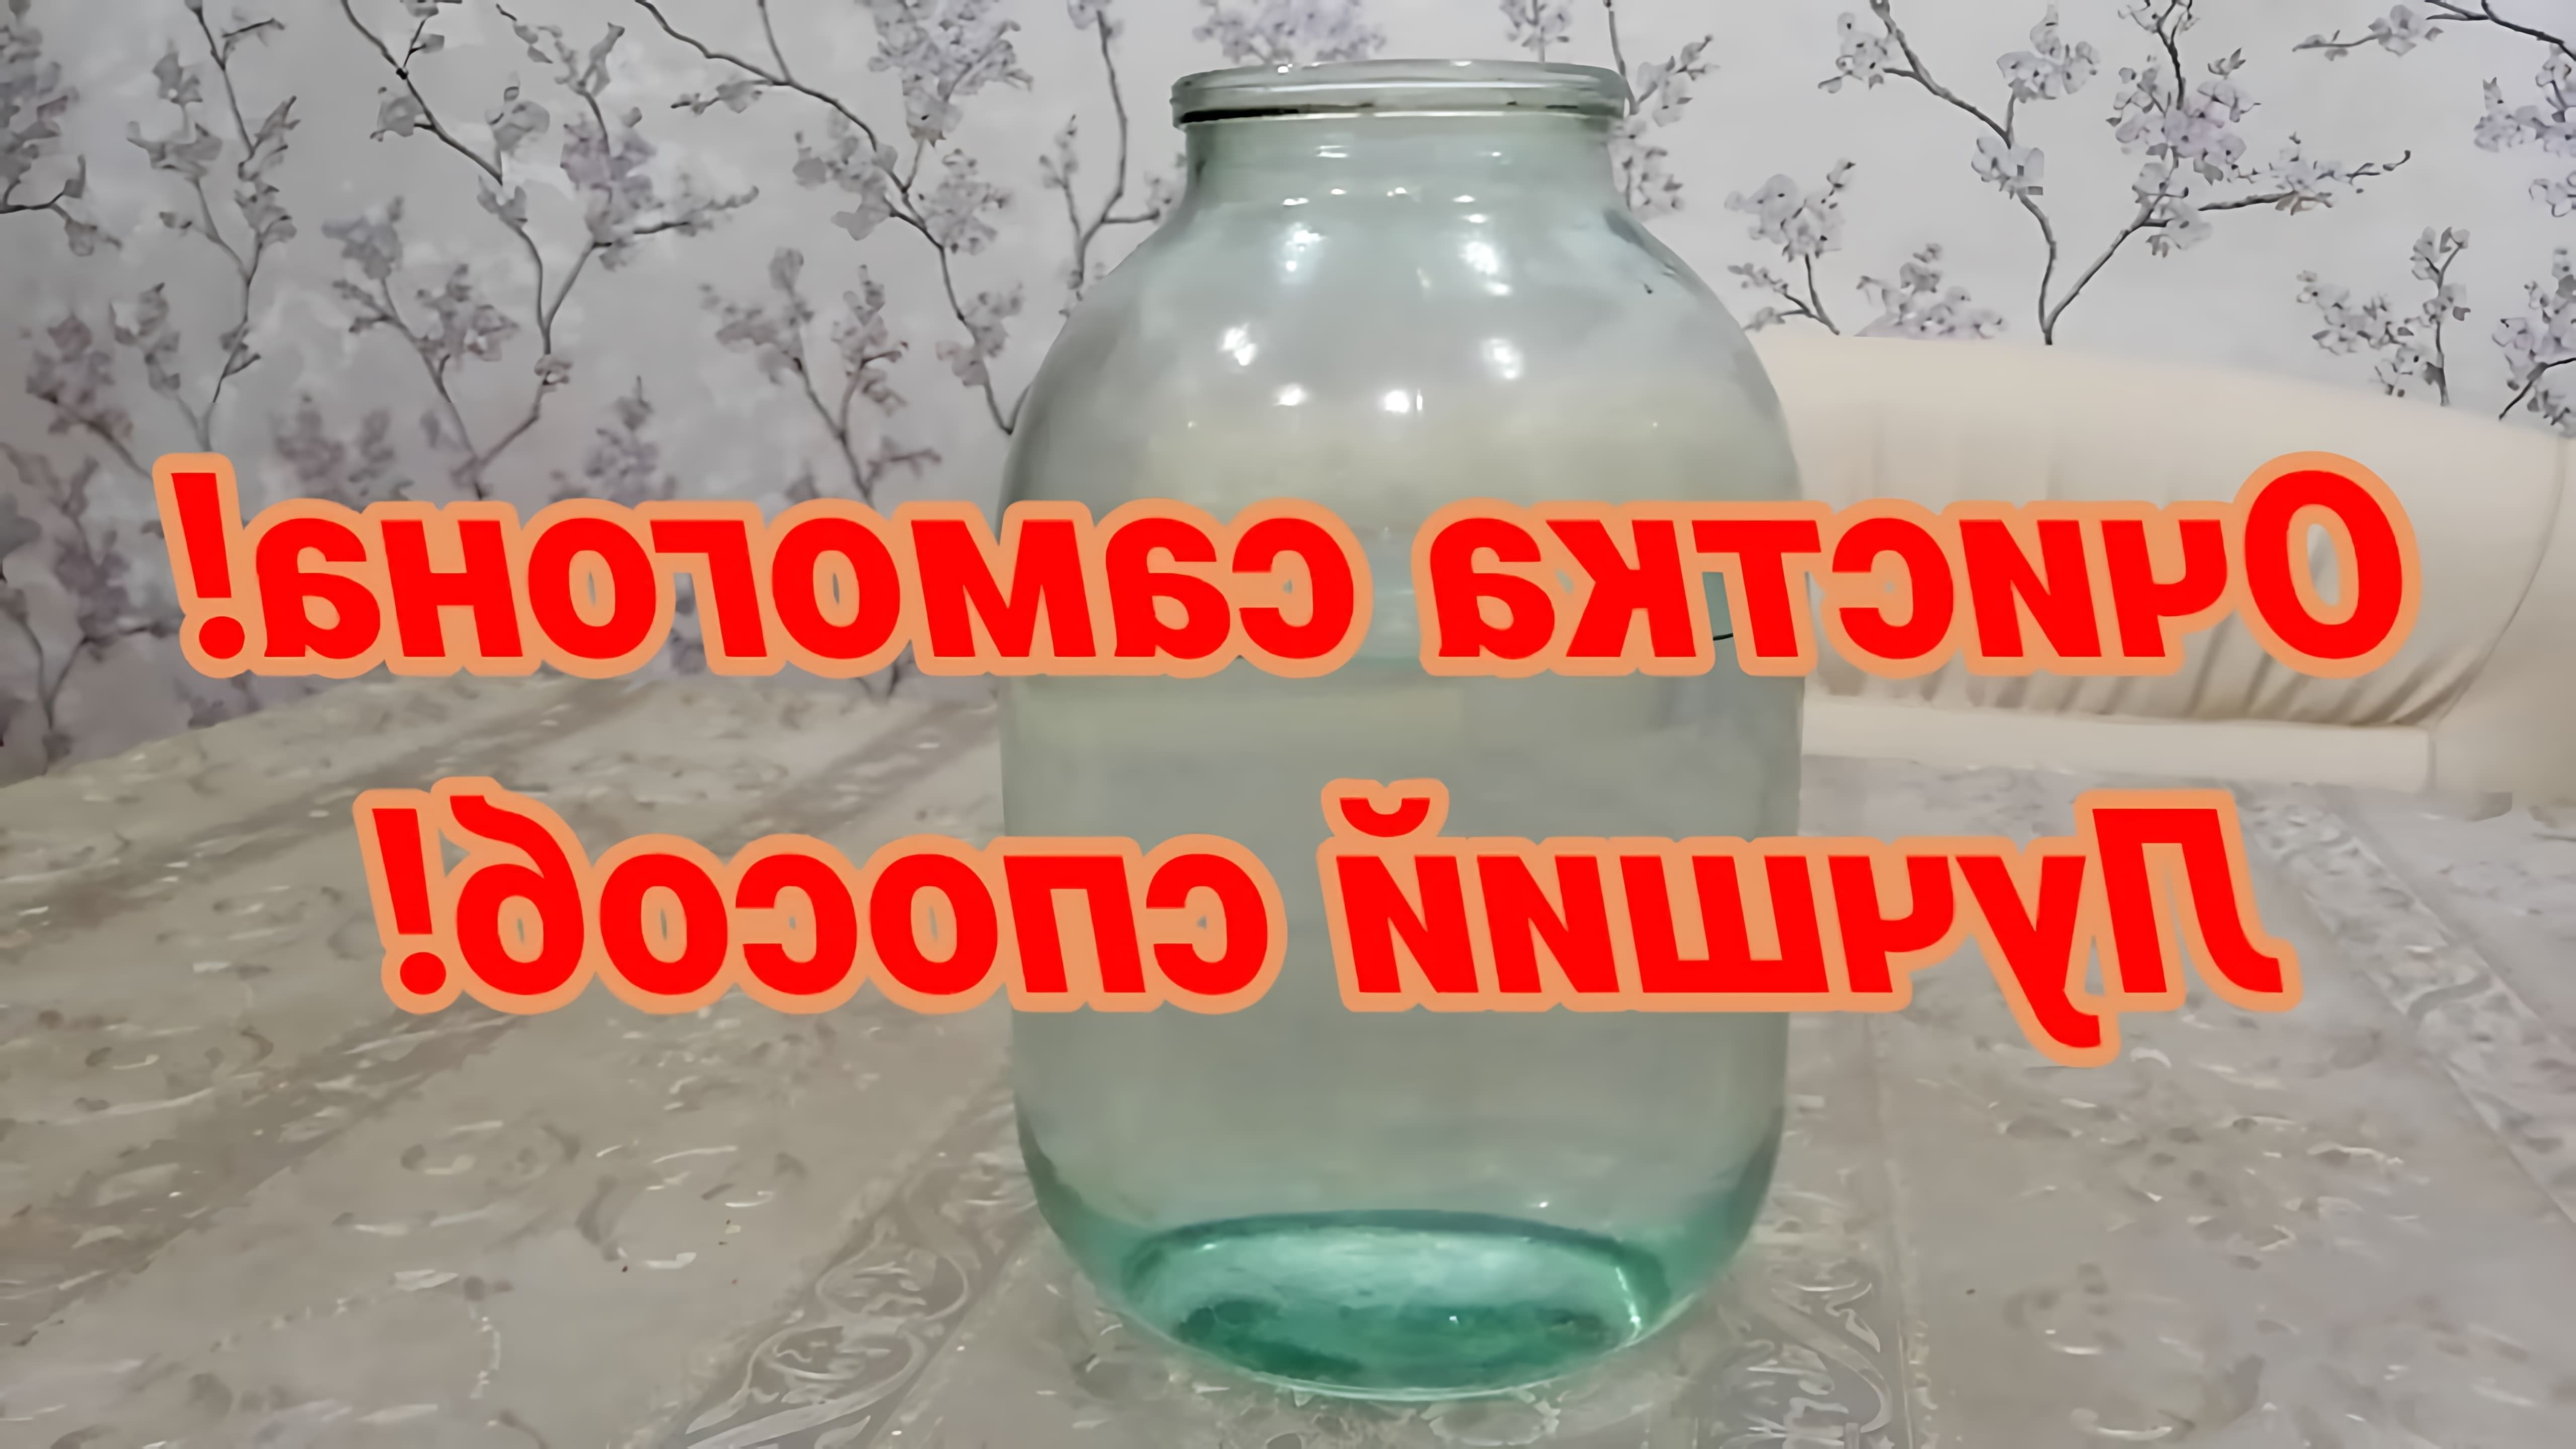 В данном видео демонстрируется процесс очистки самогона с помощью пастеризованного молока